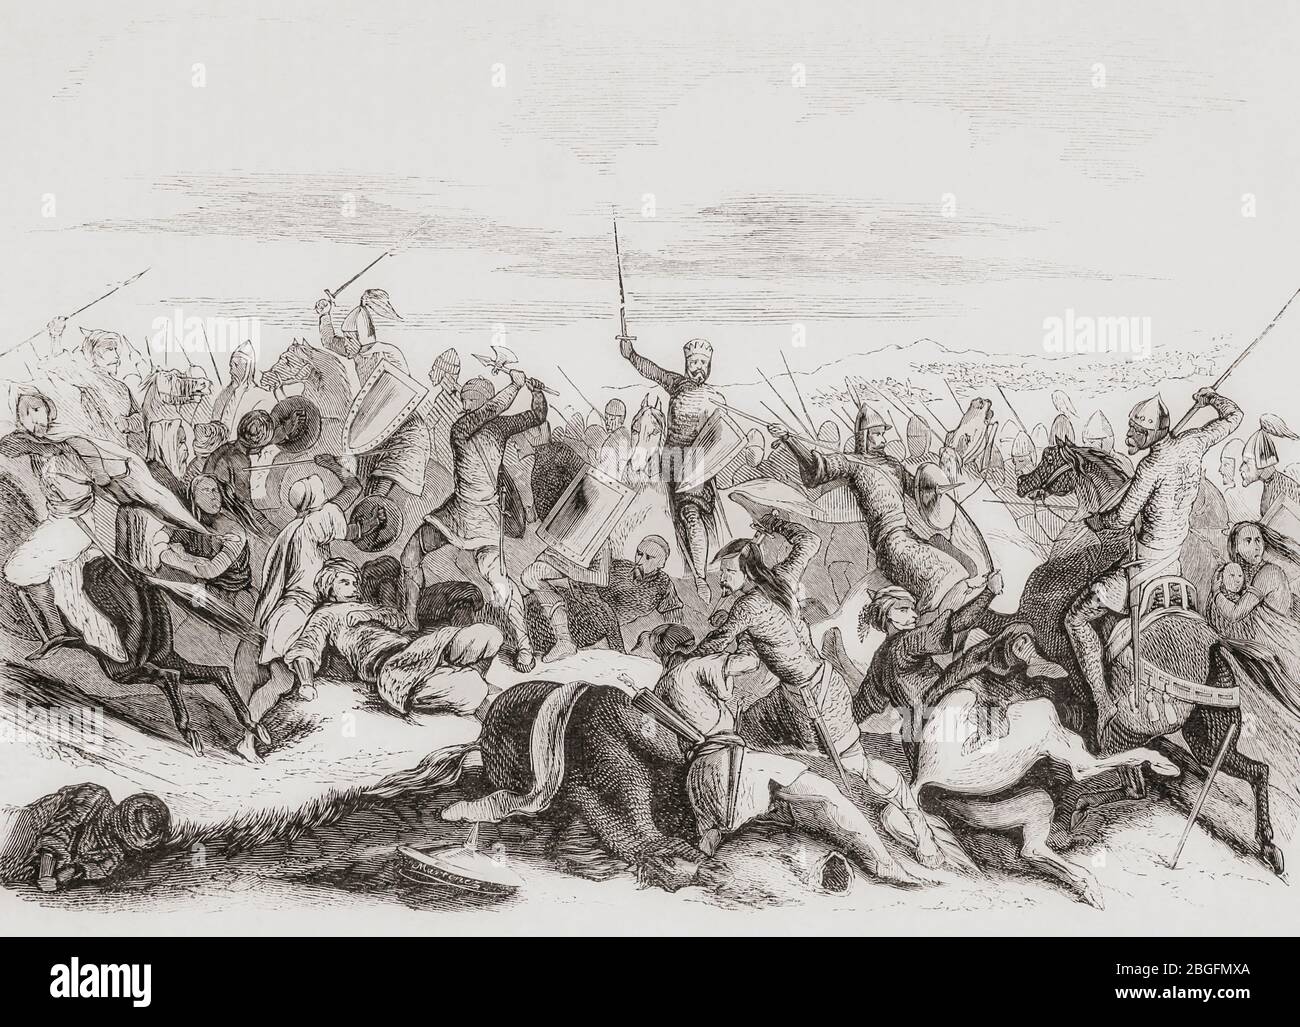 Le roi Ramiro II de Leon bat Abd-al-Rahman III dans la bataille de Simancas, 939 après Jésus-Christ. De Las Glorias Nacionales, publié à Madrid et Barcelone, 1852. Banque D'Images